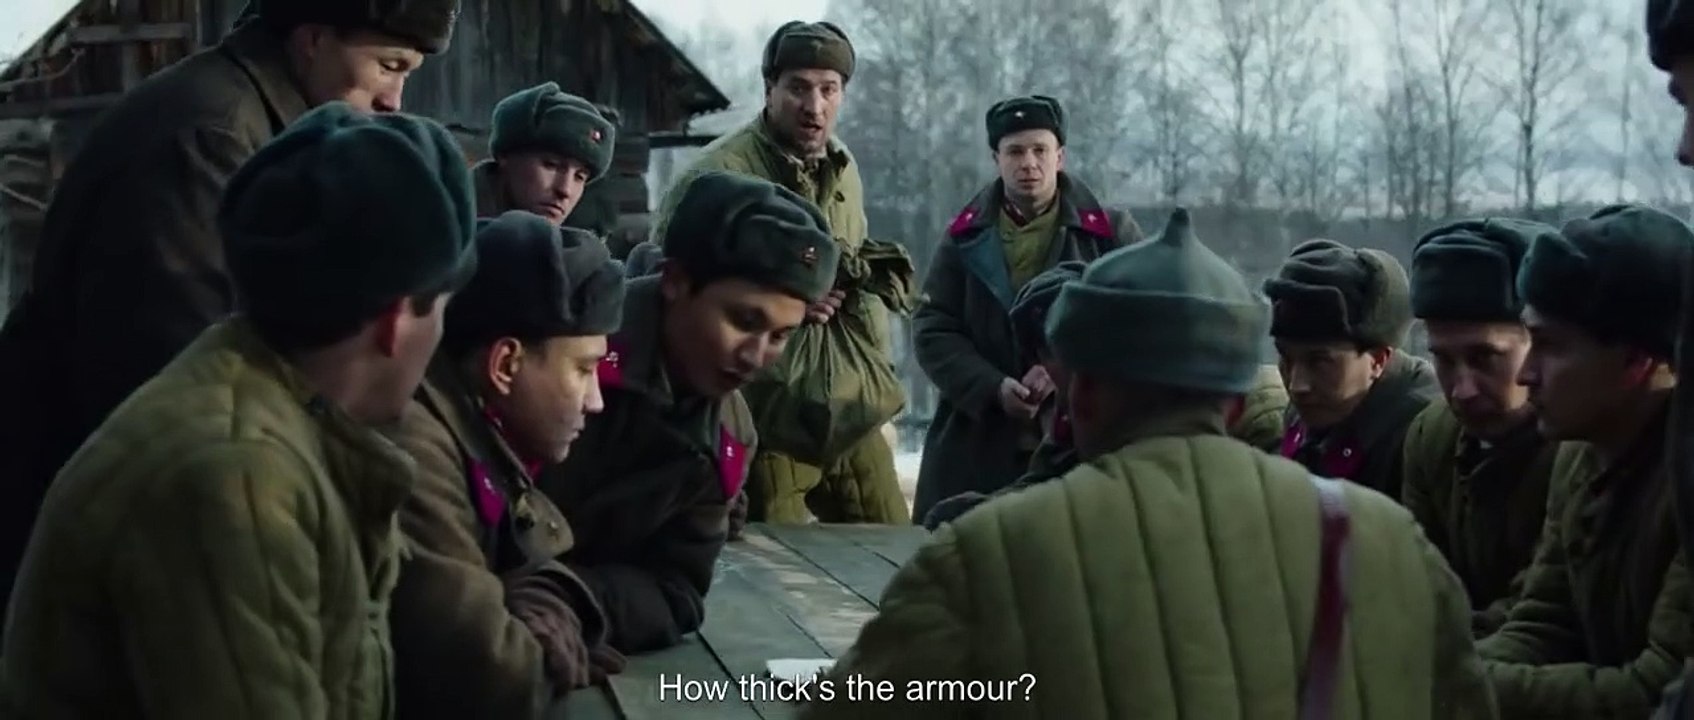 28 Soldiers - Die Panzerschlacht | movie | 2016 | Official Trailer